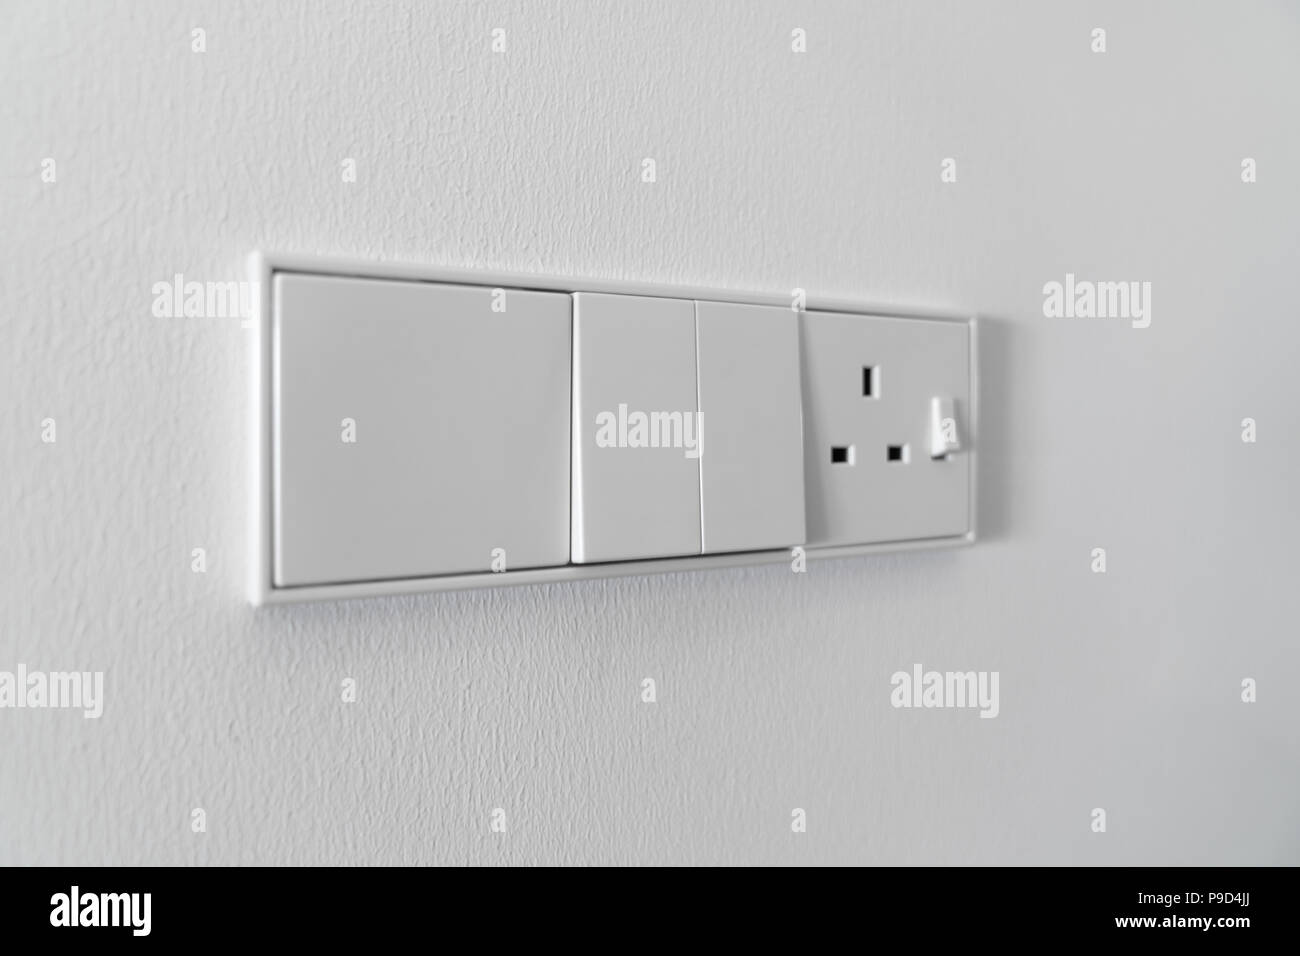 Interruptor De La Luz Moderno En La Pared Blanca Imagen de archivo - Imagen  de sitio, primer: 61984417